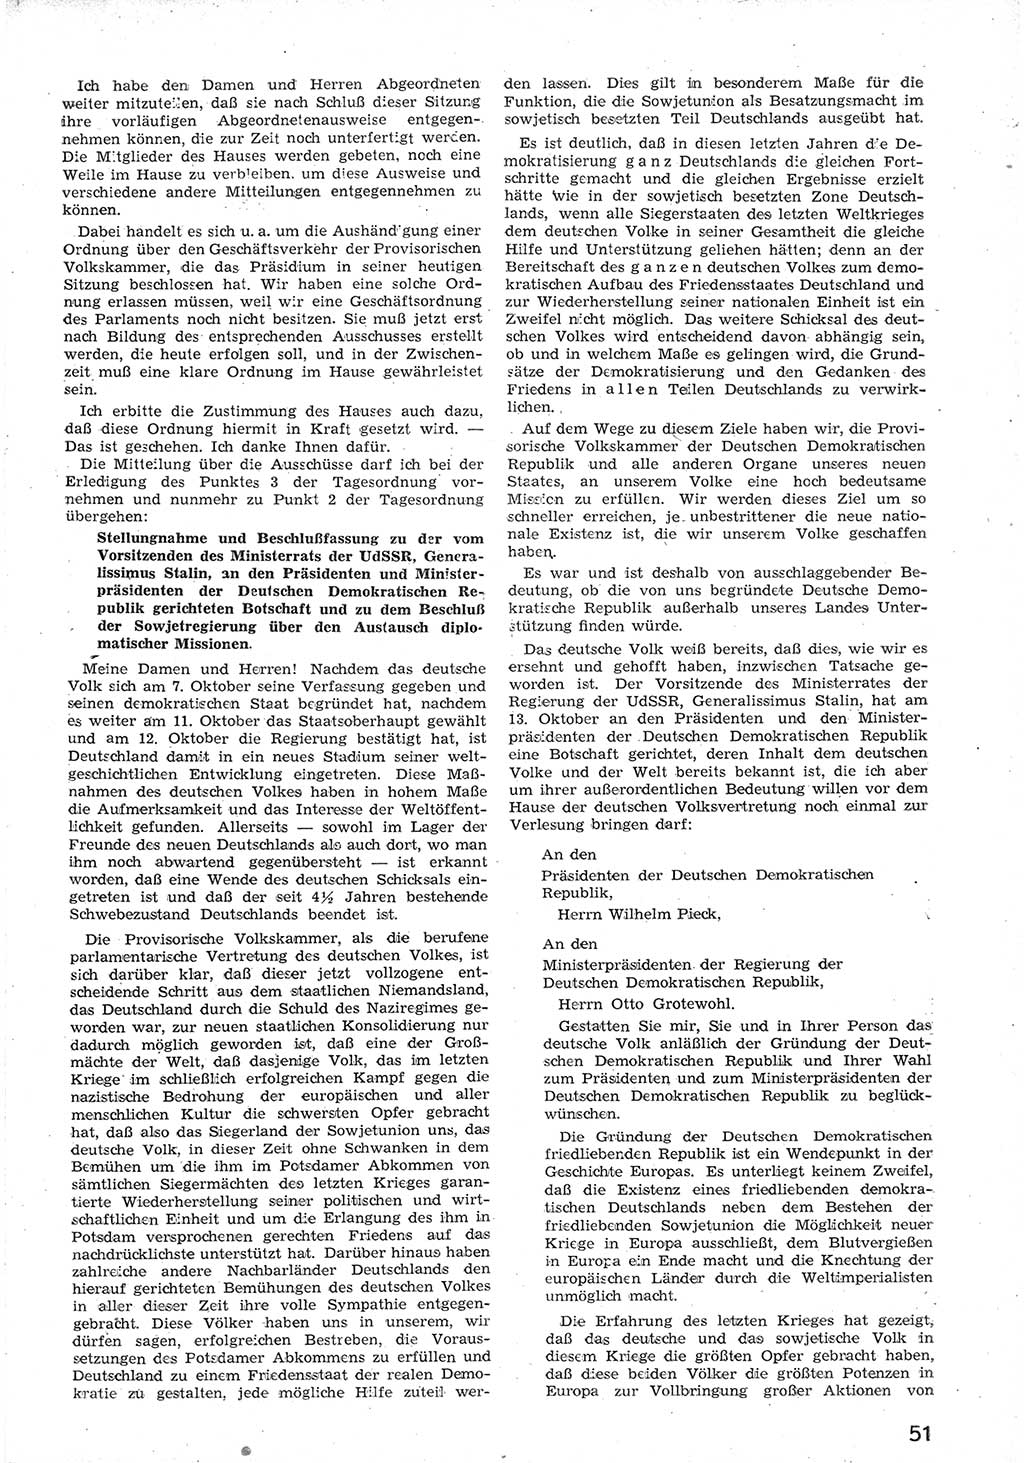 Provisorische Volkskammer (VK) der Deutschen Demokratischen Republik (DDR) 1949-1950, Dokument 63 (Prov. VK DDR 1949-1950, Dok. 63)